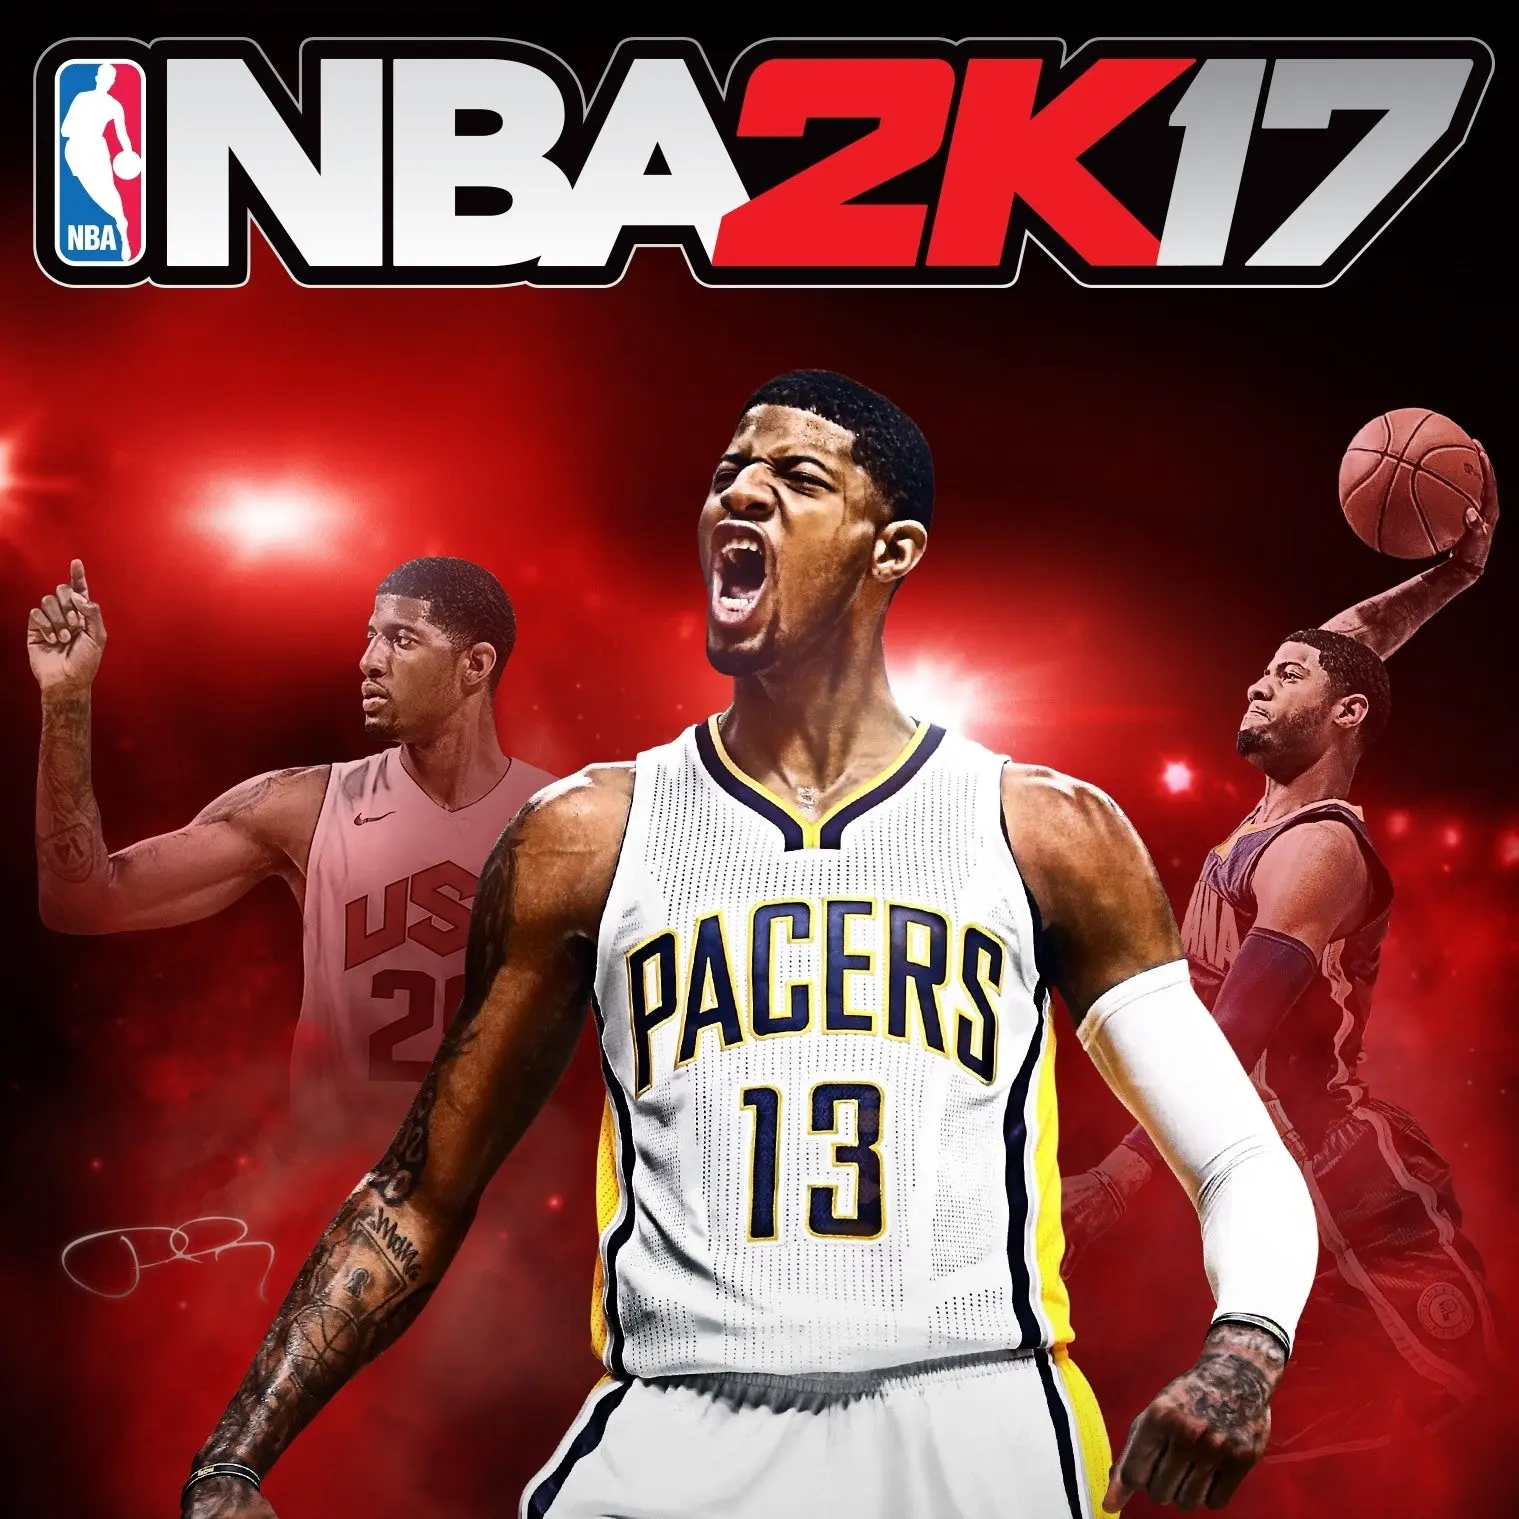 NBA 2K17 - Early Tip Off Access DLC (EU) (PC) - Steam - Digital Code